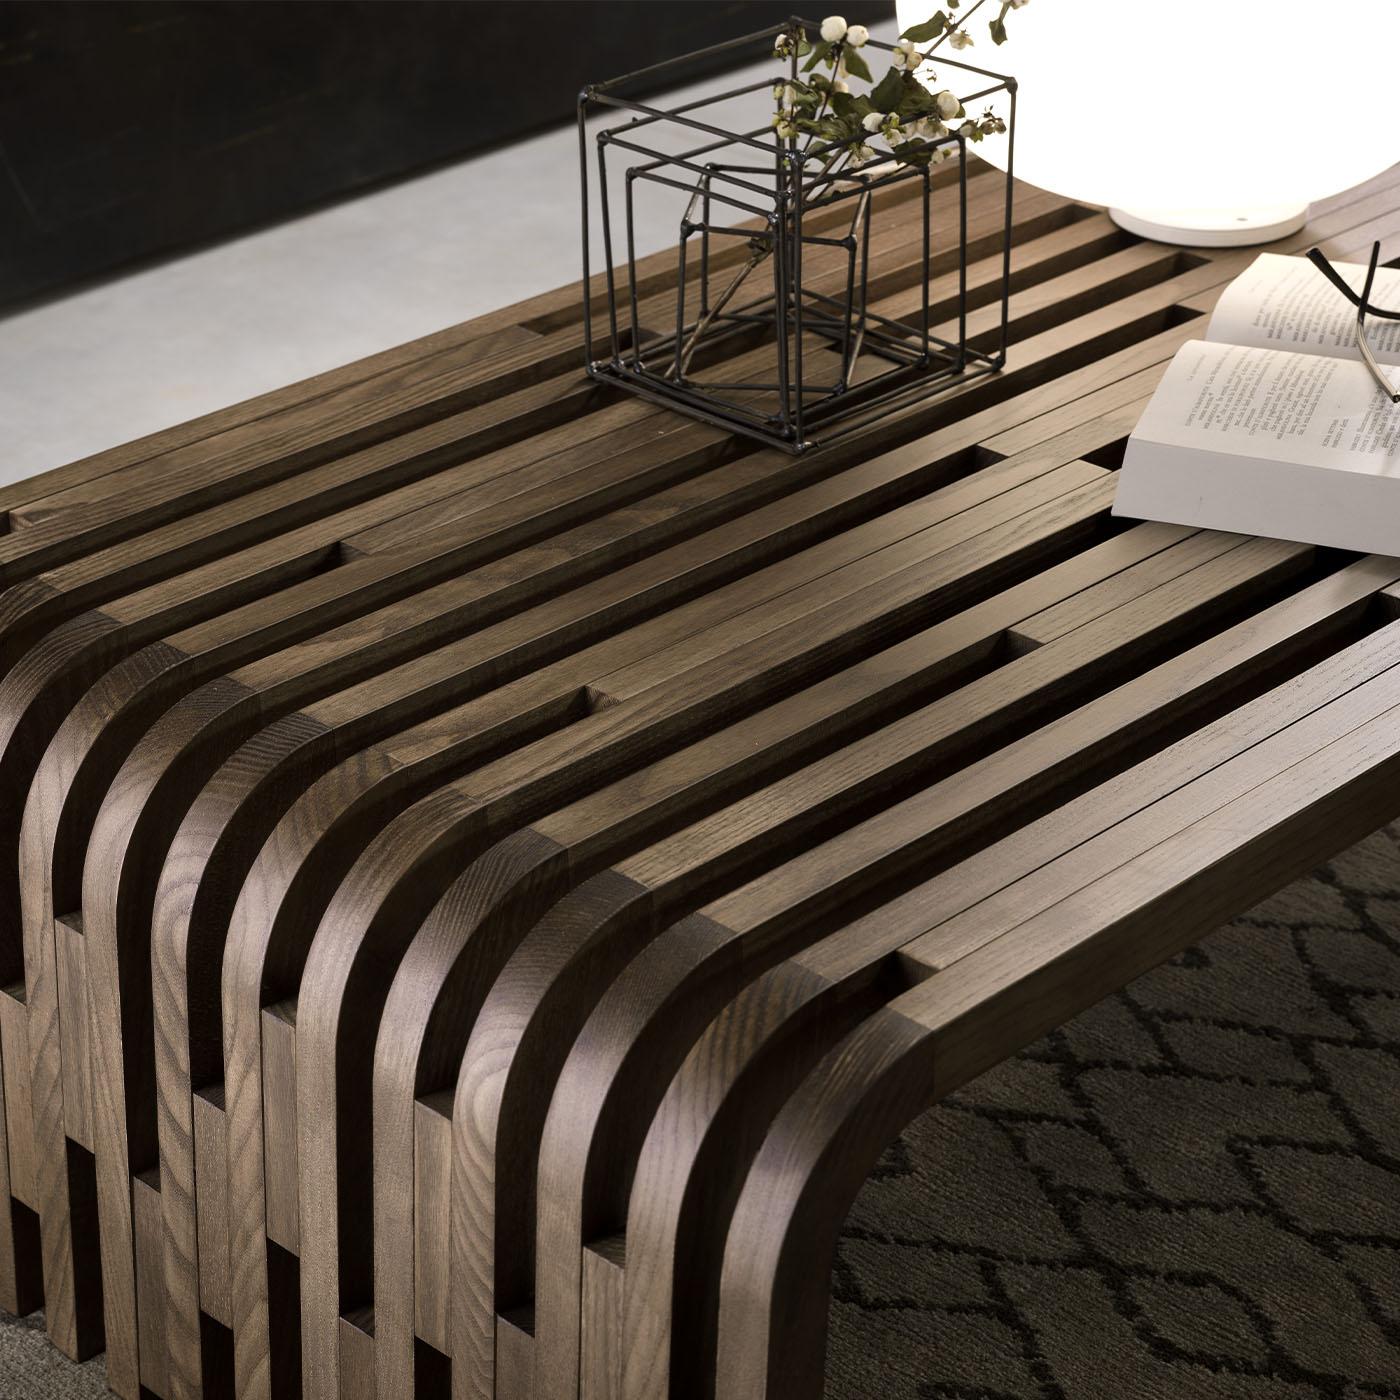 Cette table d'appoint originale pour canapé, conçue par Norberto Delfinetti et Monica Bernasconi, est fabriquée en bois de noyer massif, capturant la beauté naturelle de l'extérieur. Le plateau en verre crée un contraste saisissant mais harmonieux